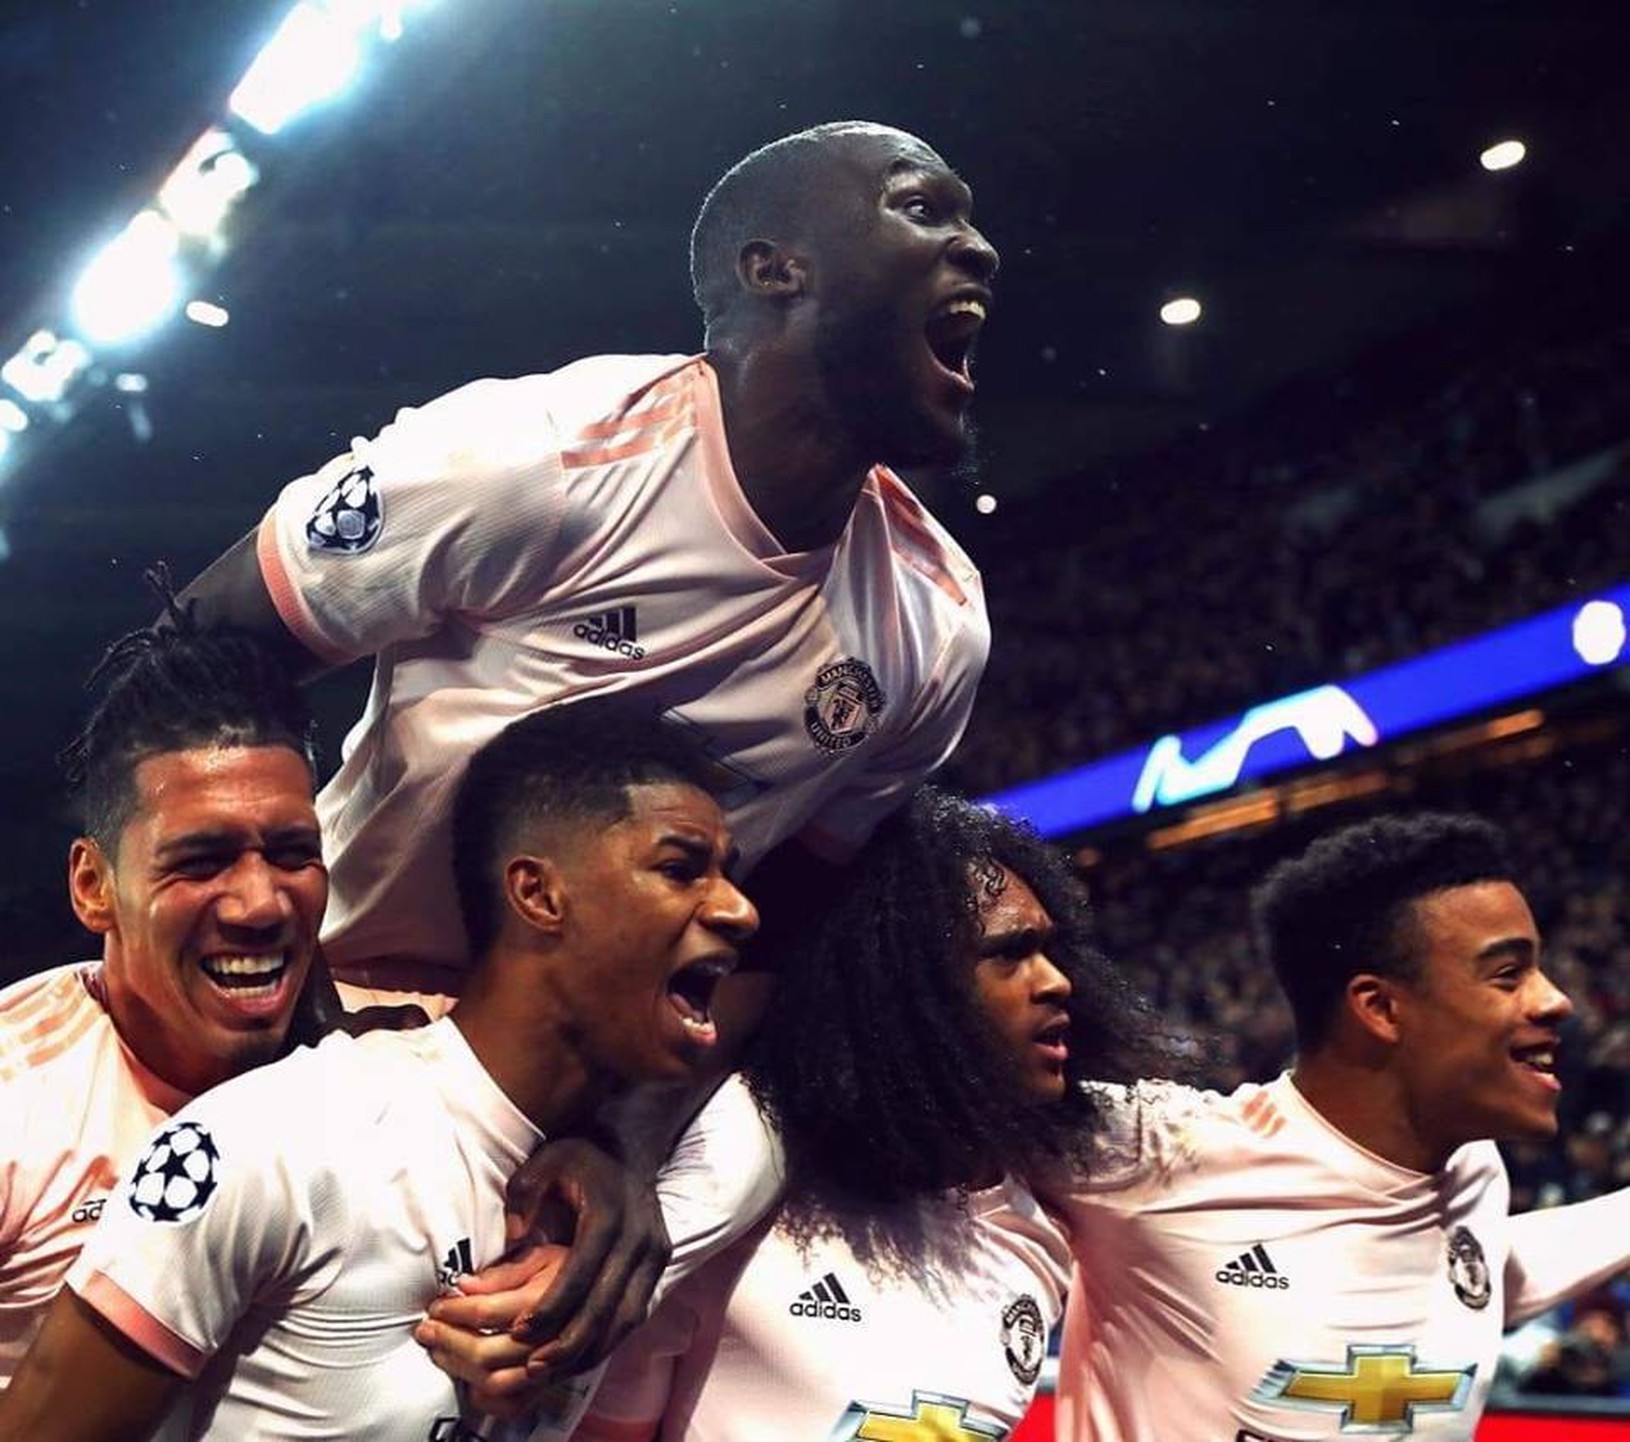 Hráči United oslavujú gól